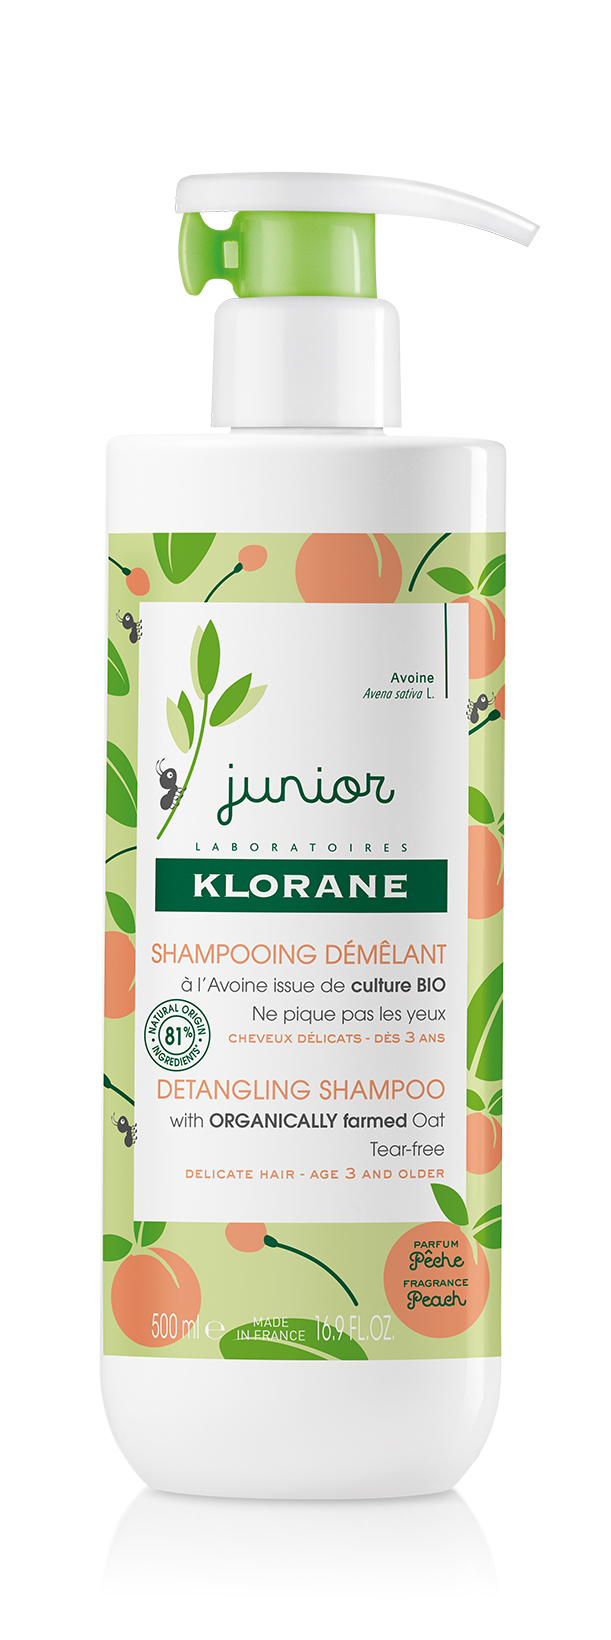 Îngrijire și igiena - Klorane Junior Sampon pentru descurcarea parului cu aroma de piersica, 500ml, epastila.ro